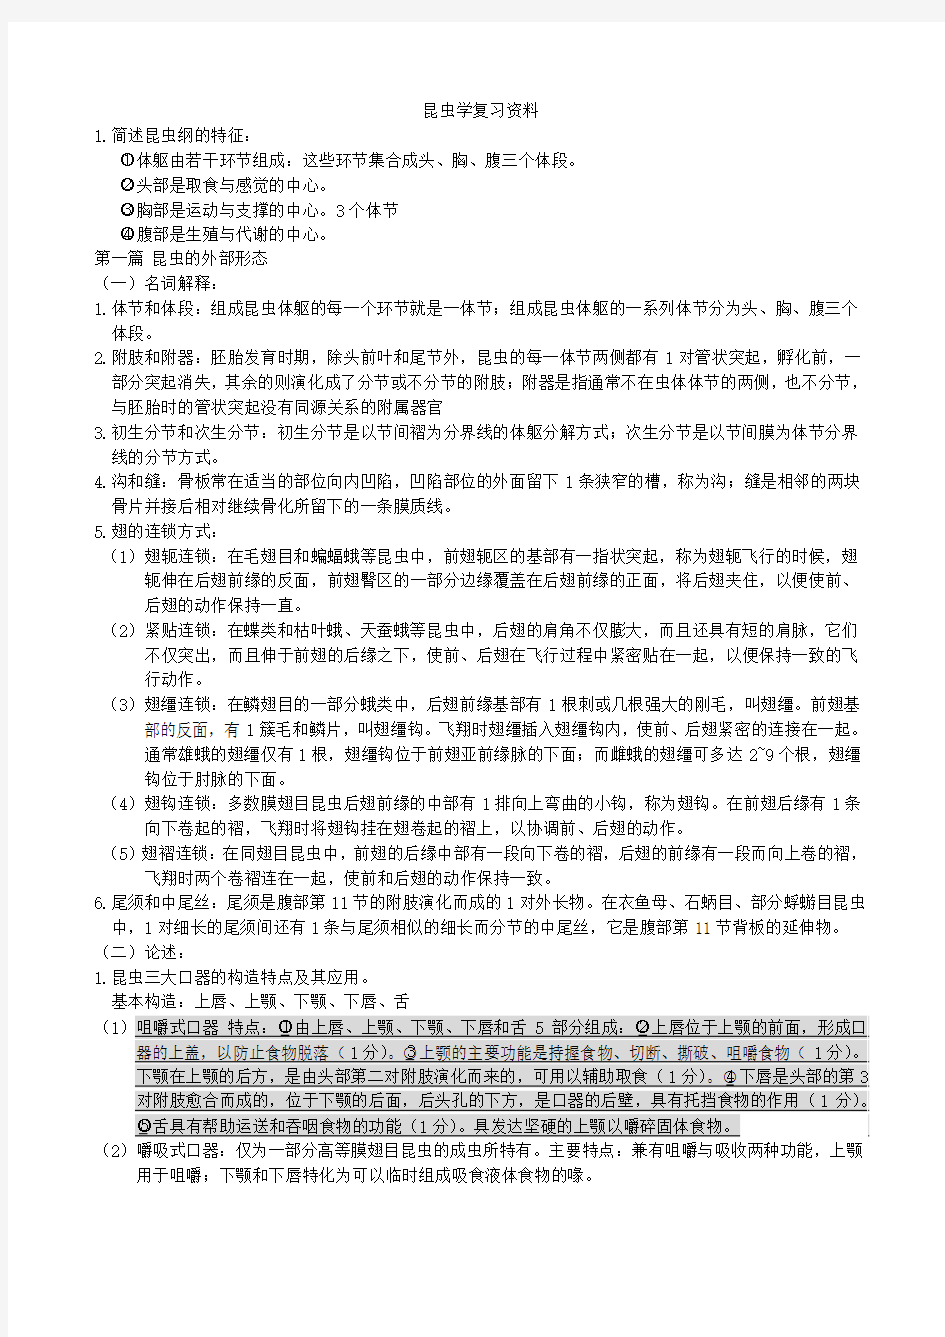 华中农业大学昆虫学复习资料(自己整理,仅供参考)